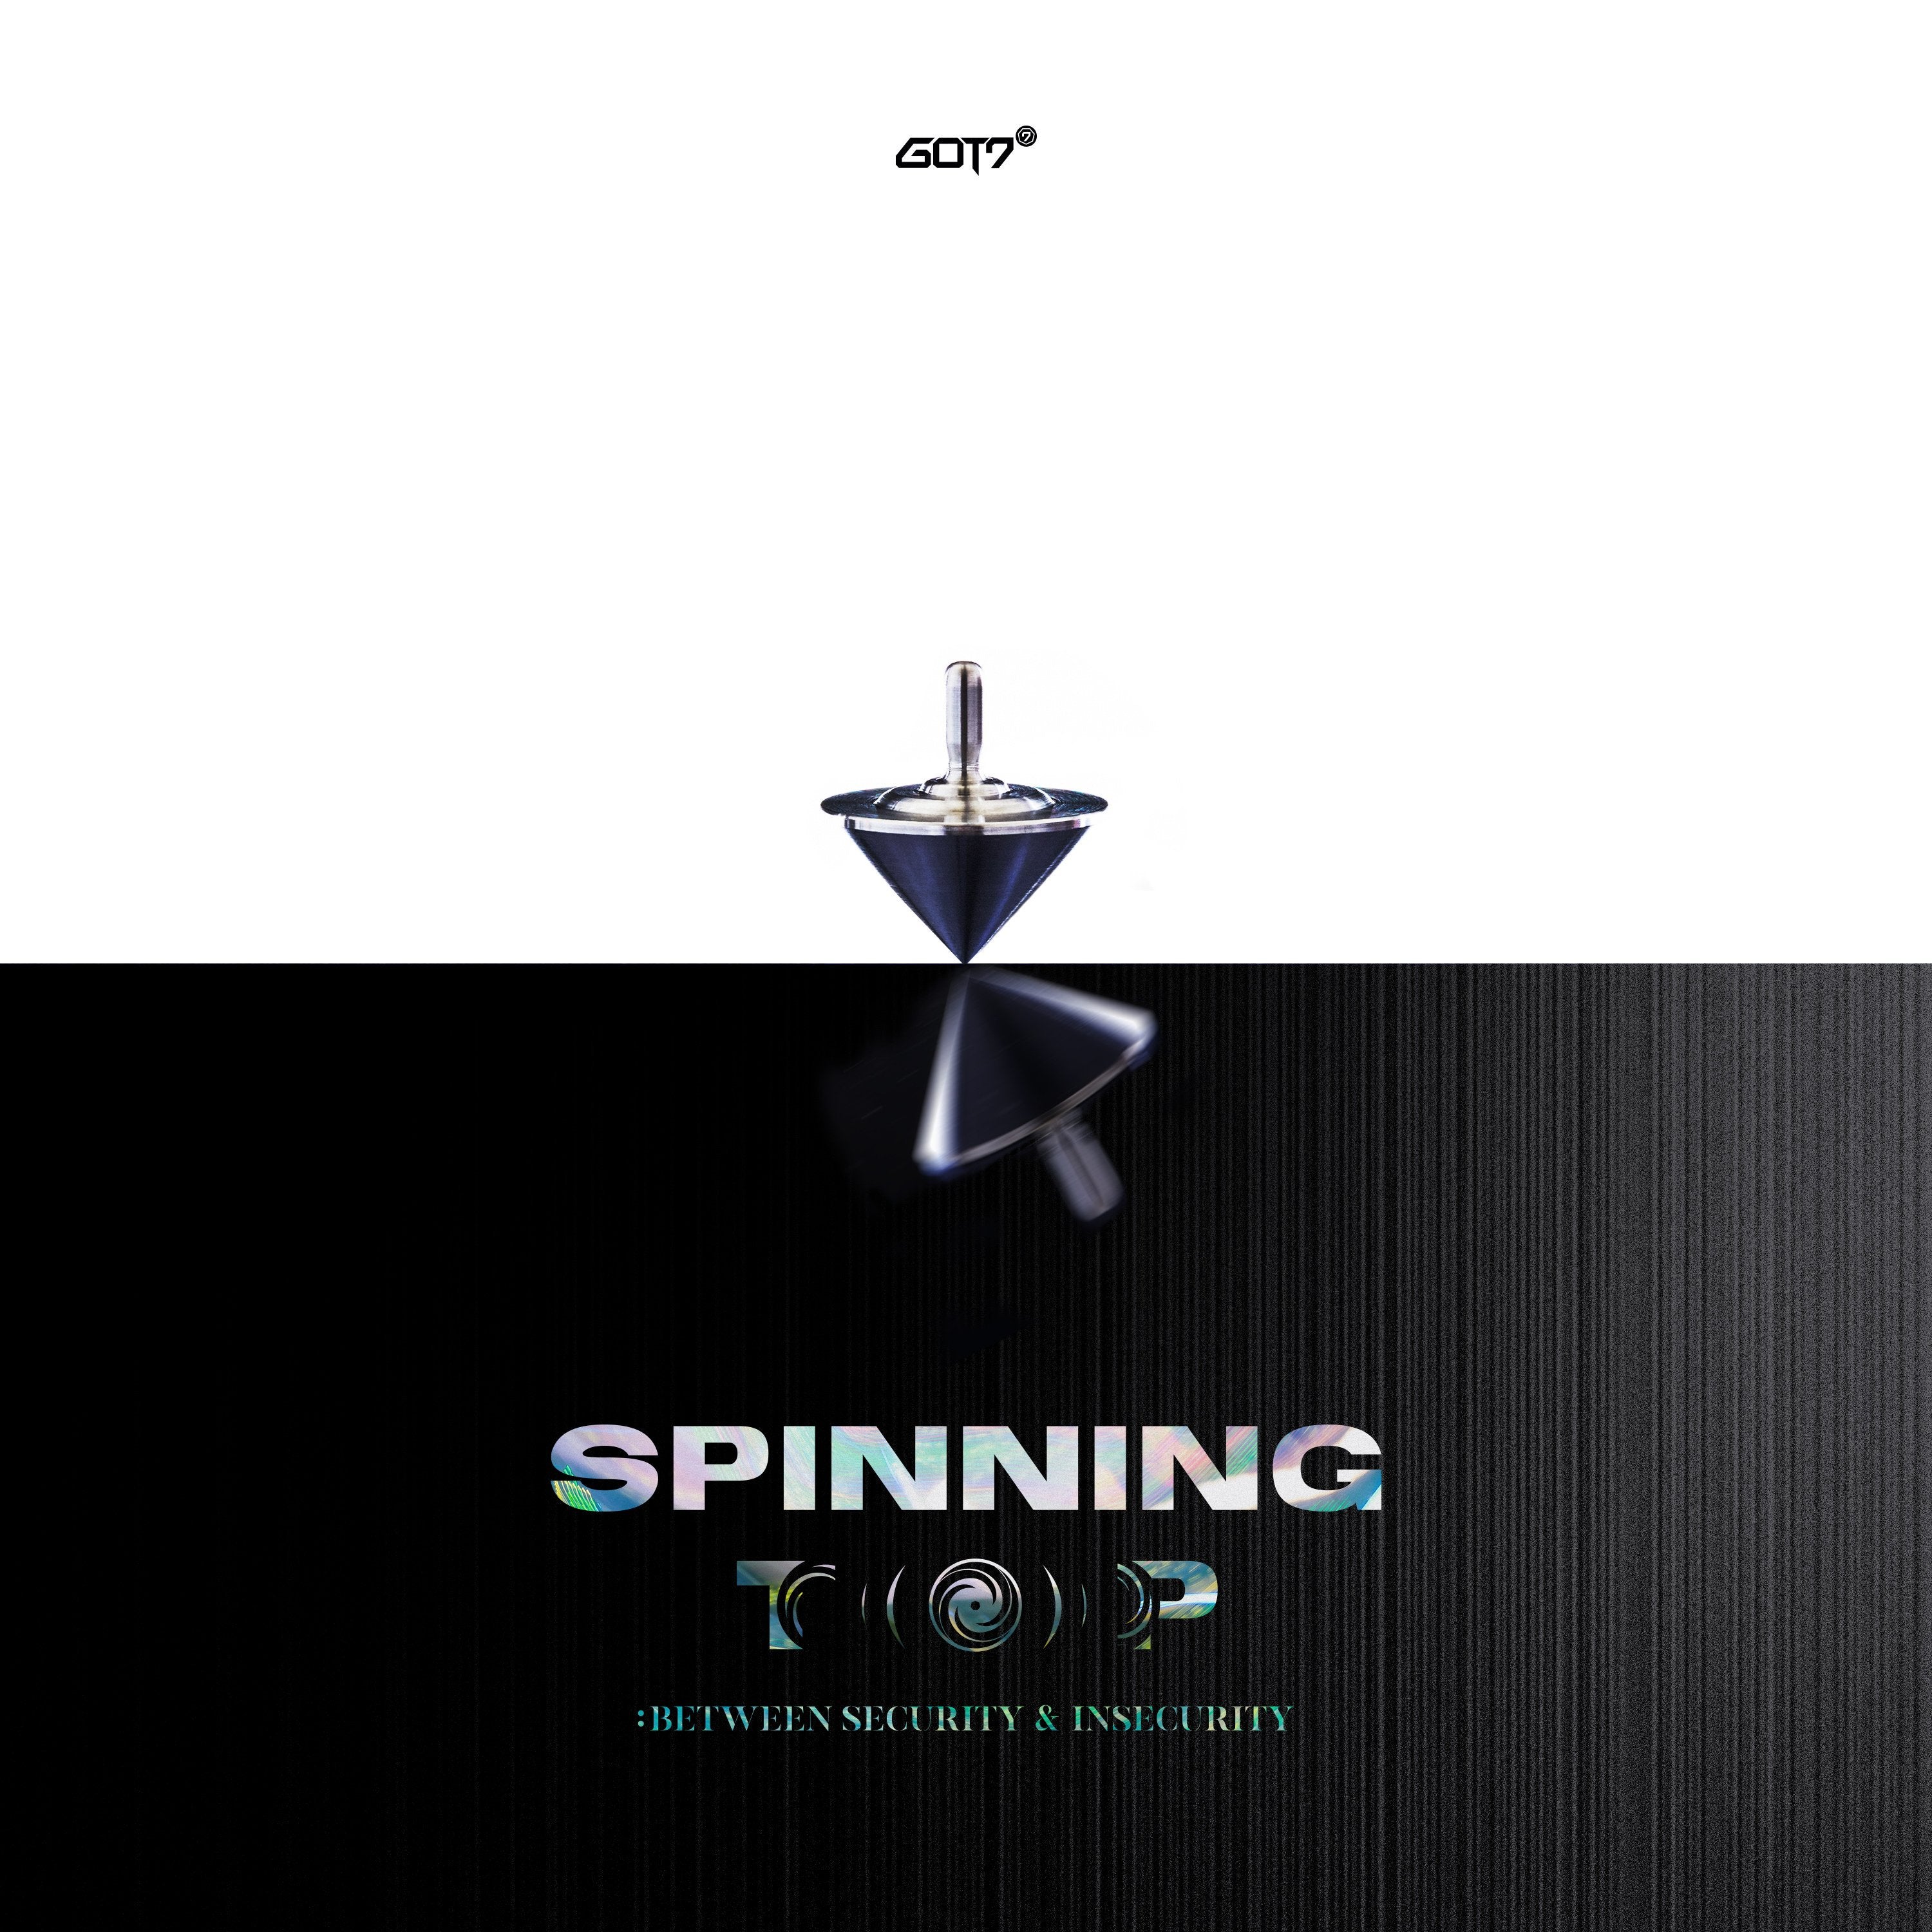 GOT7 - SPINNING TOP (Random Ver.)